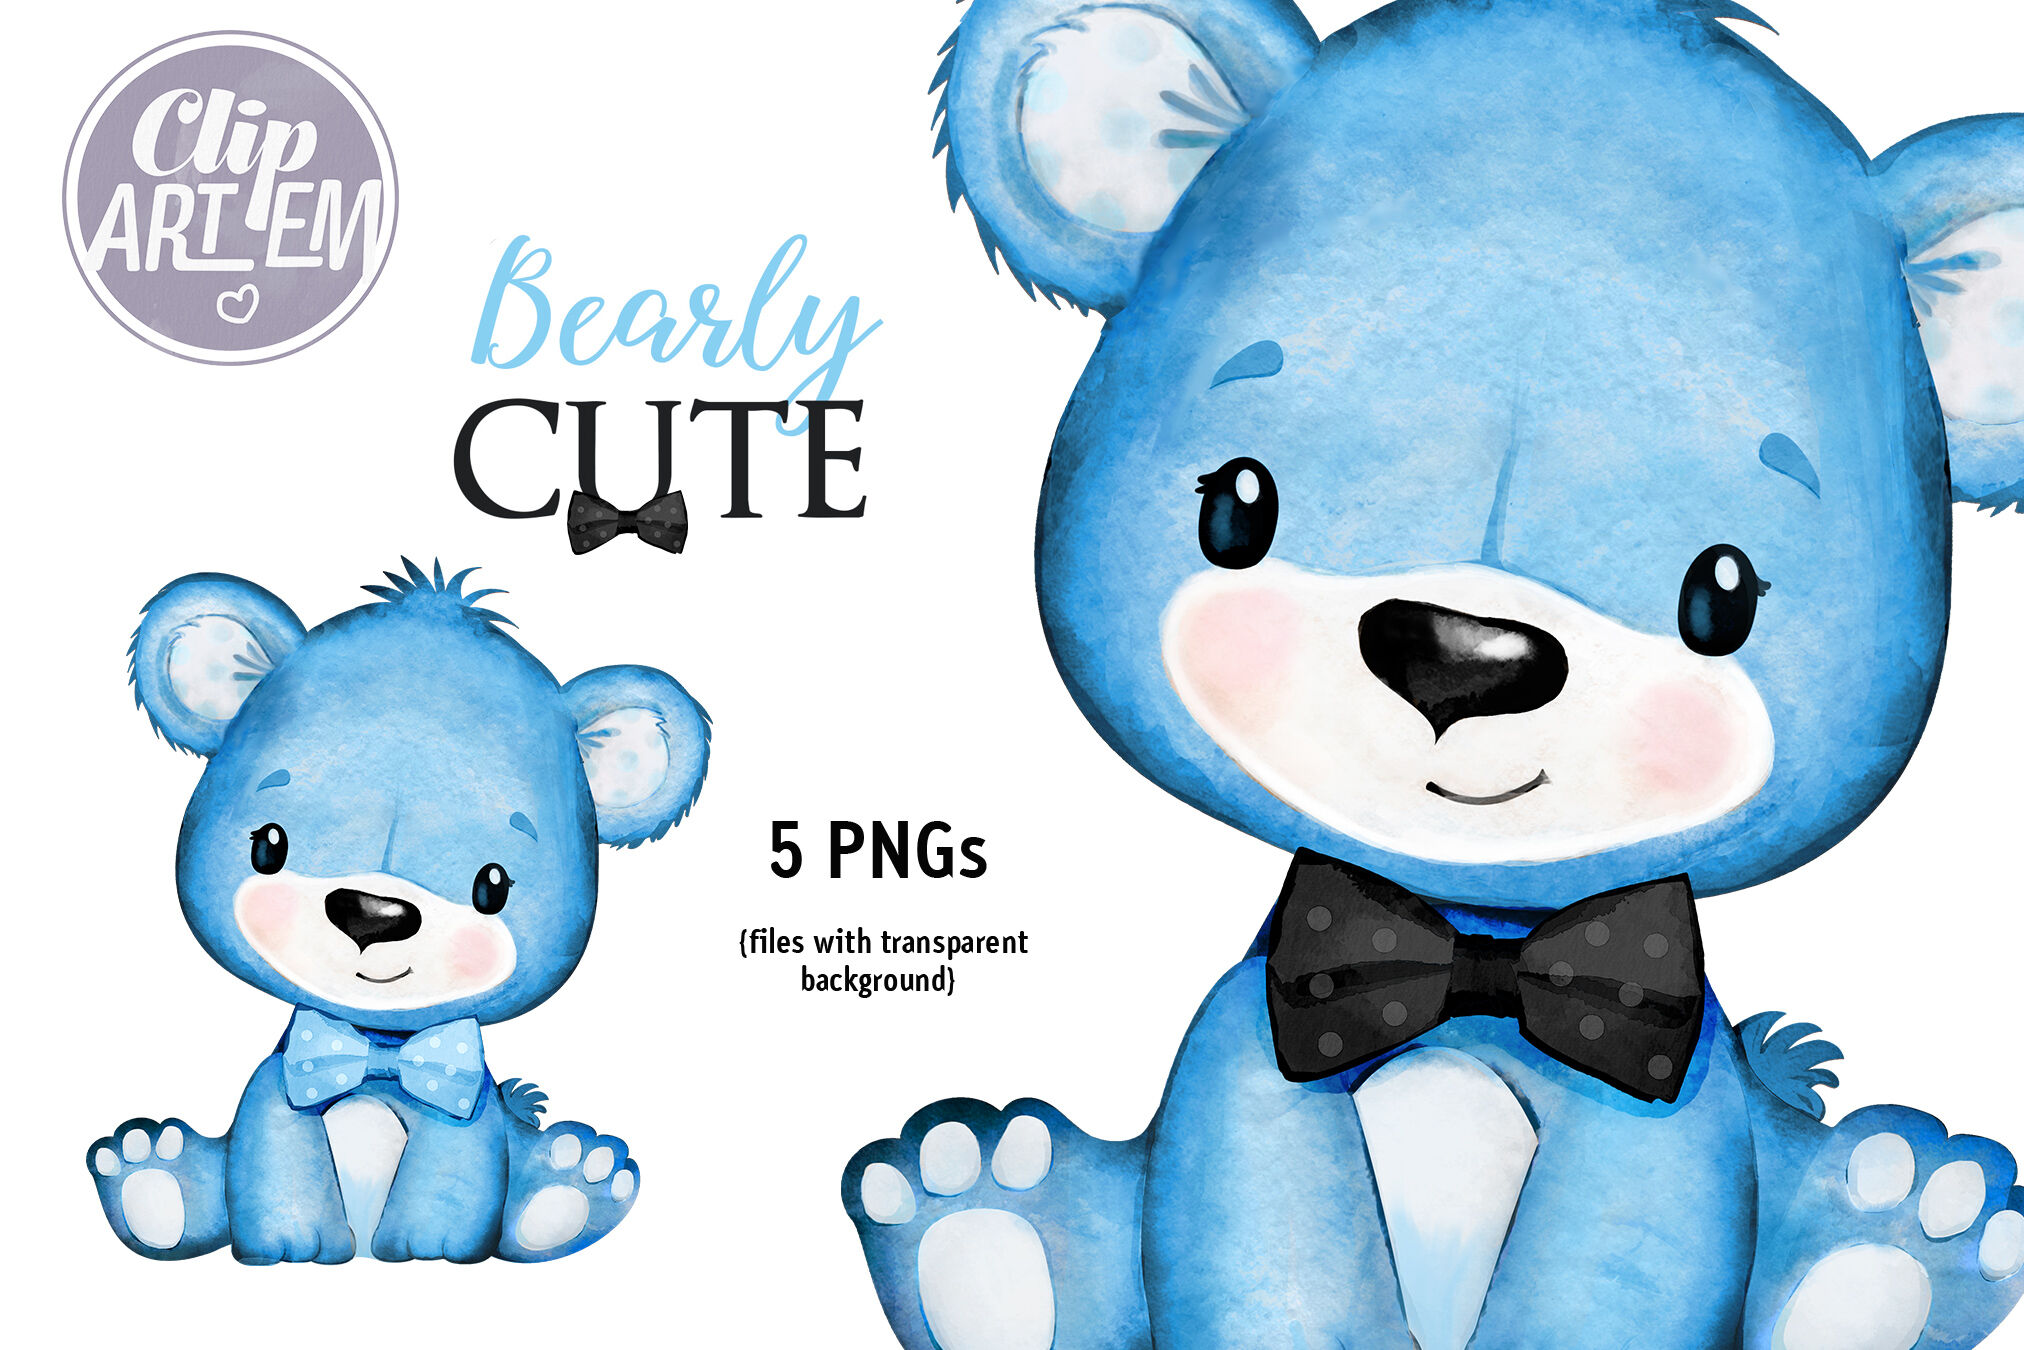 teddy bear clip art